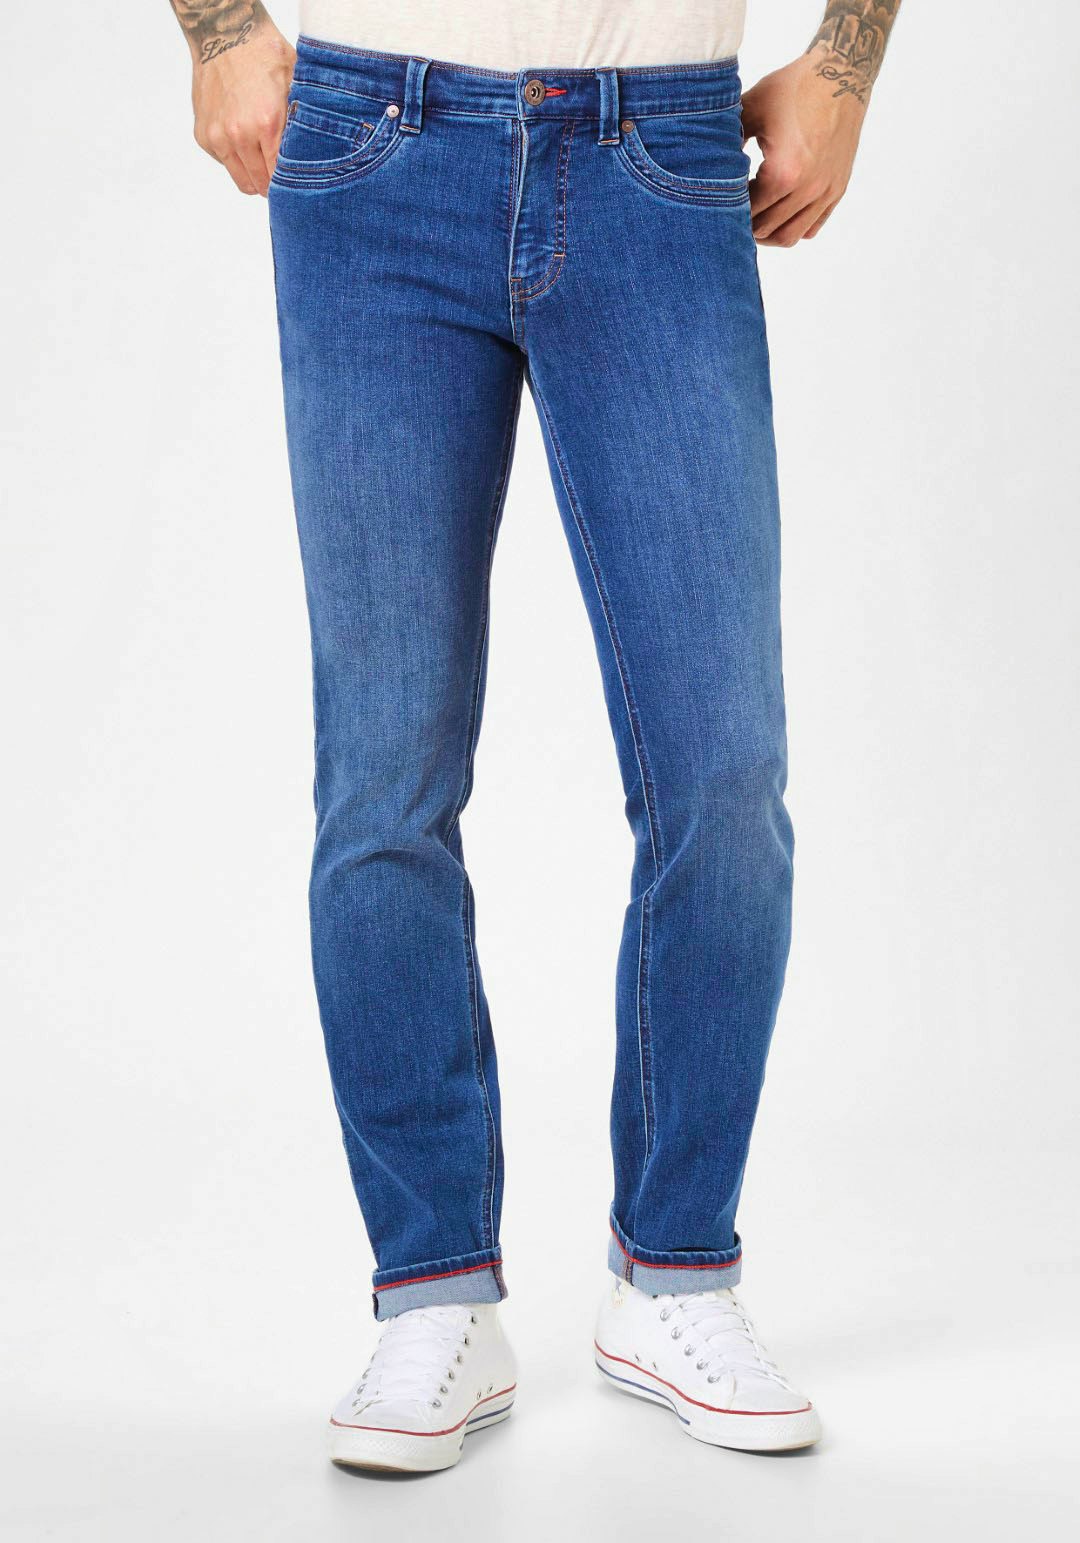 Unsere besten Favoriten - Wählen Sie die Damen jeans extra lang Ihren Wünschen entsprechend